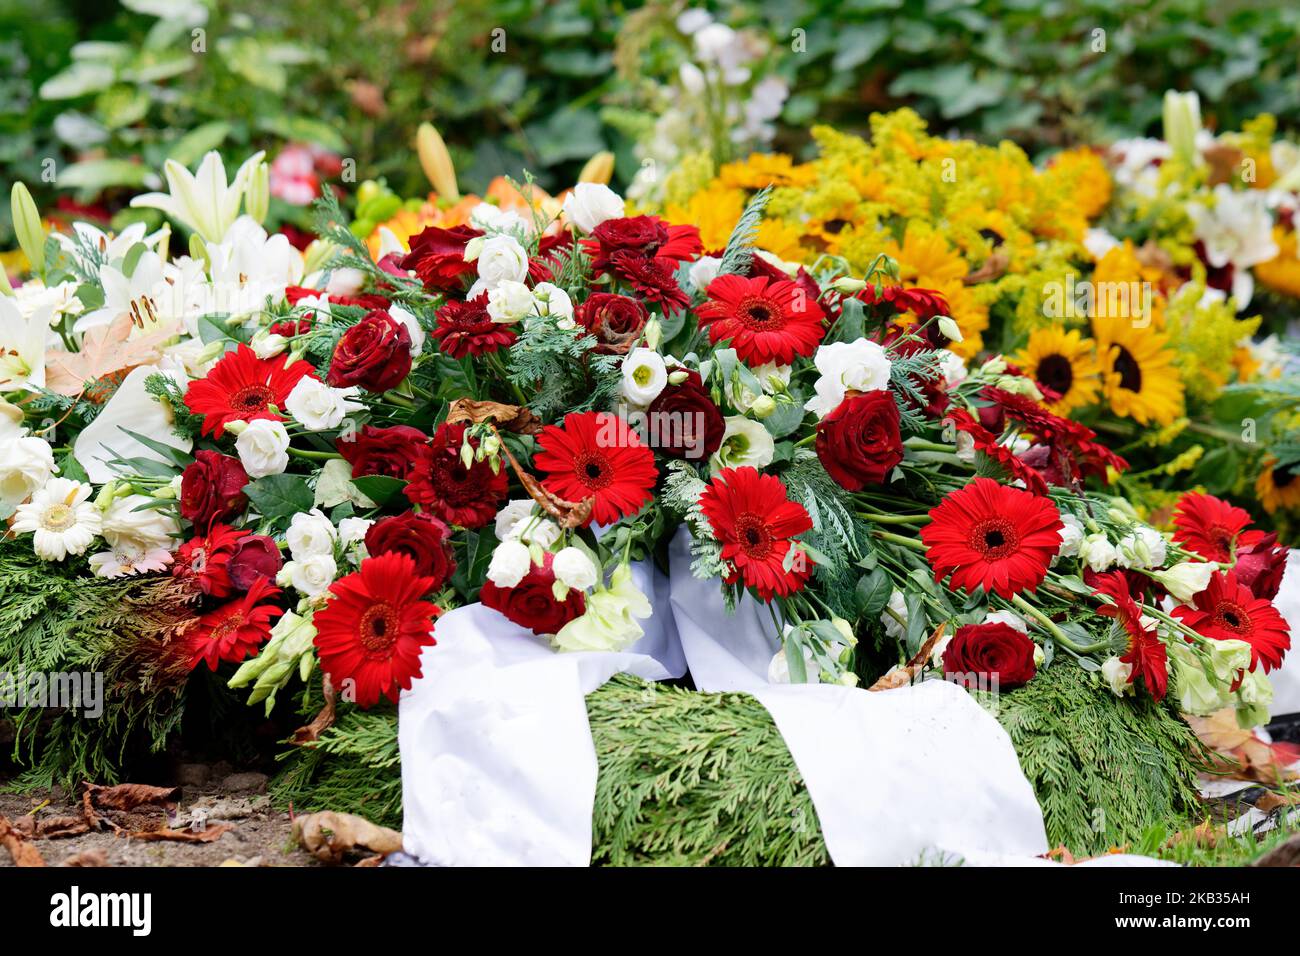 rosen, Gerbera, Lilien und Sonnenblumen auf einem Grab nach einer Beerdigung Stockfoto